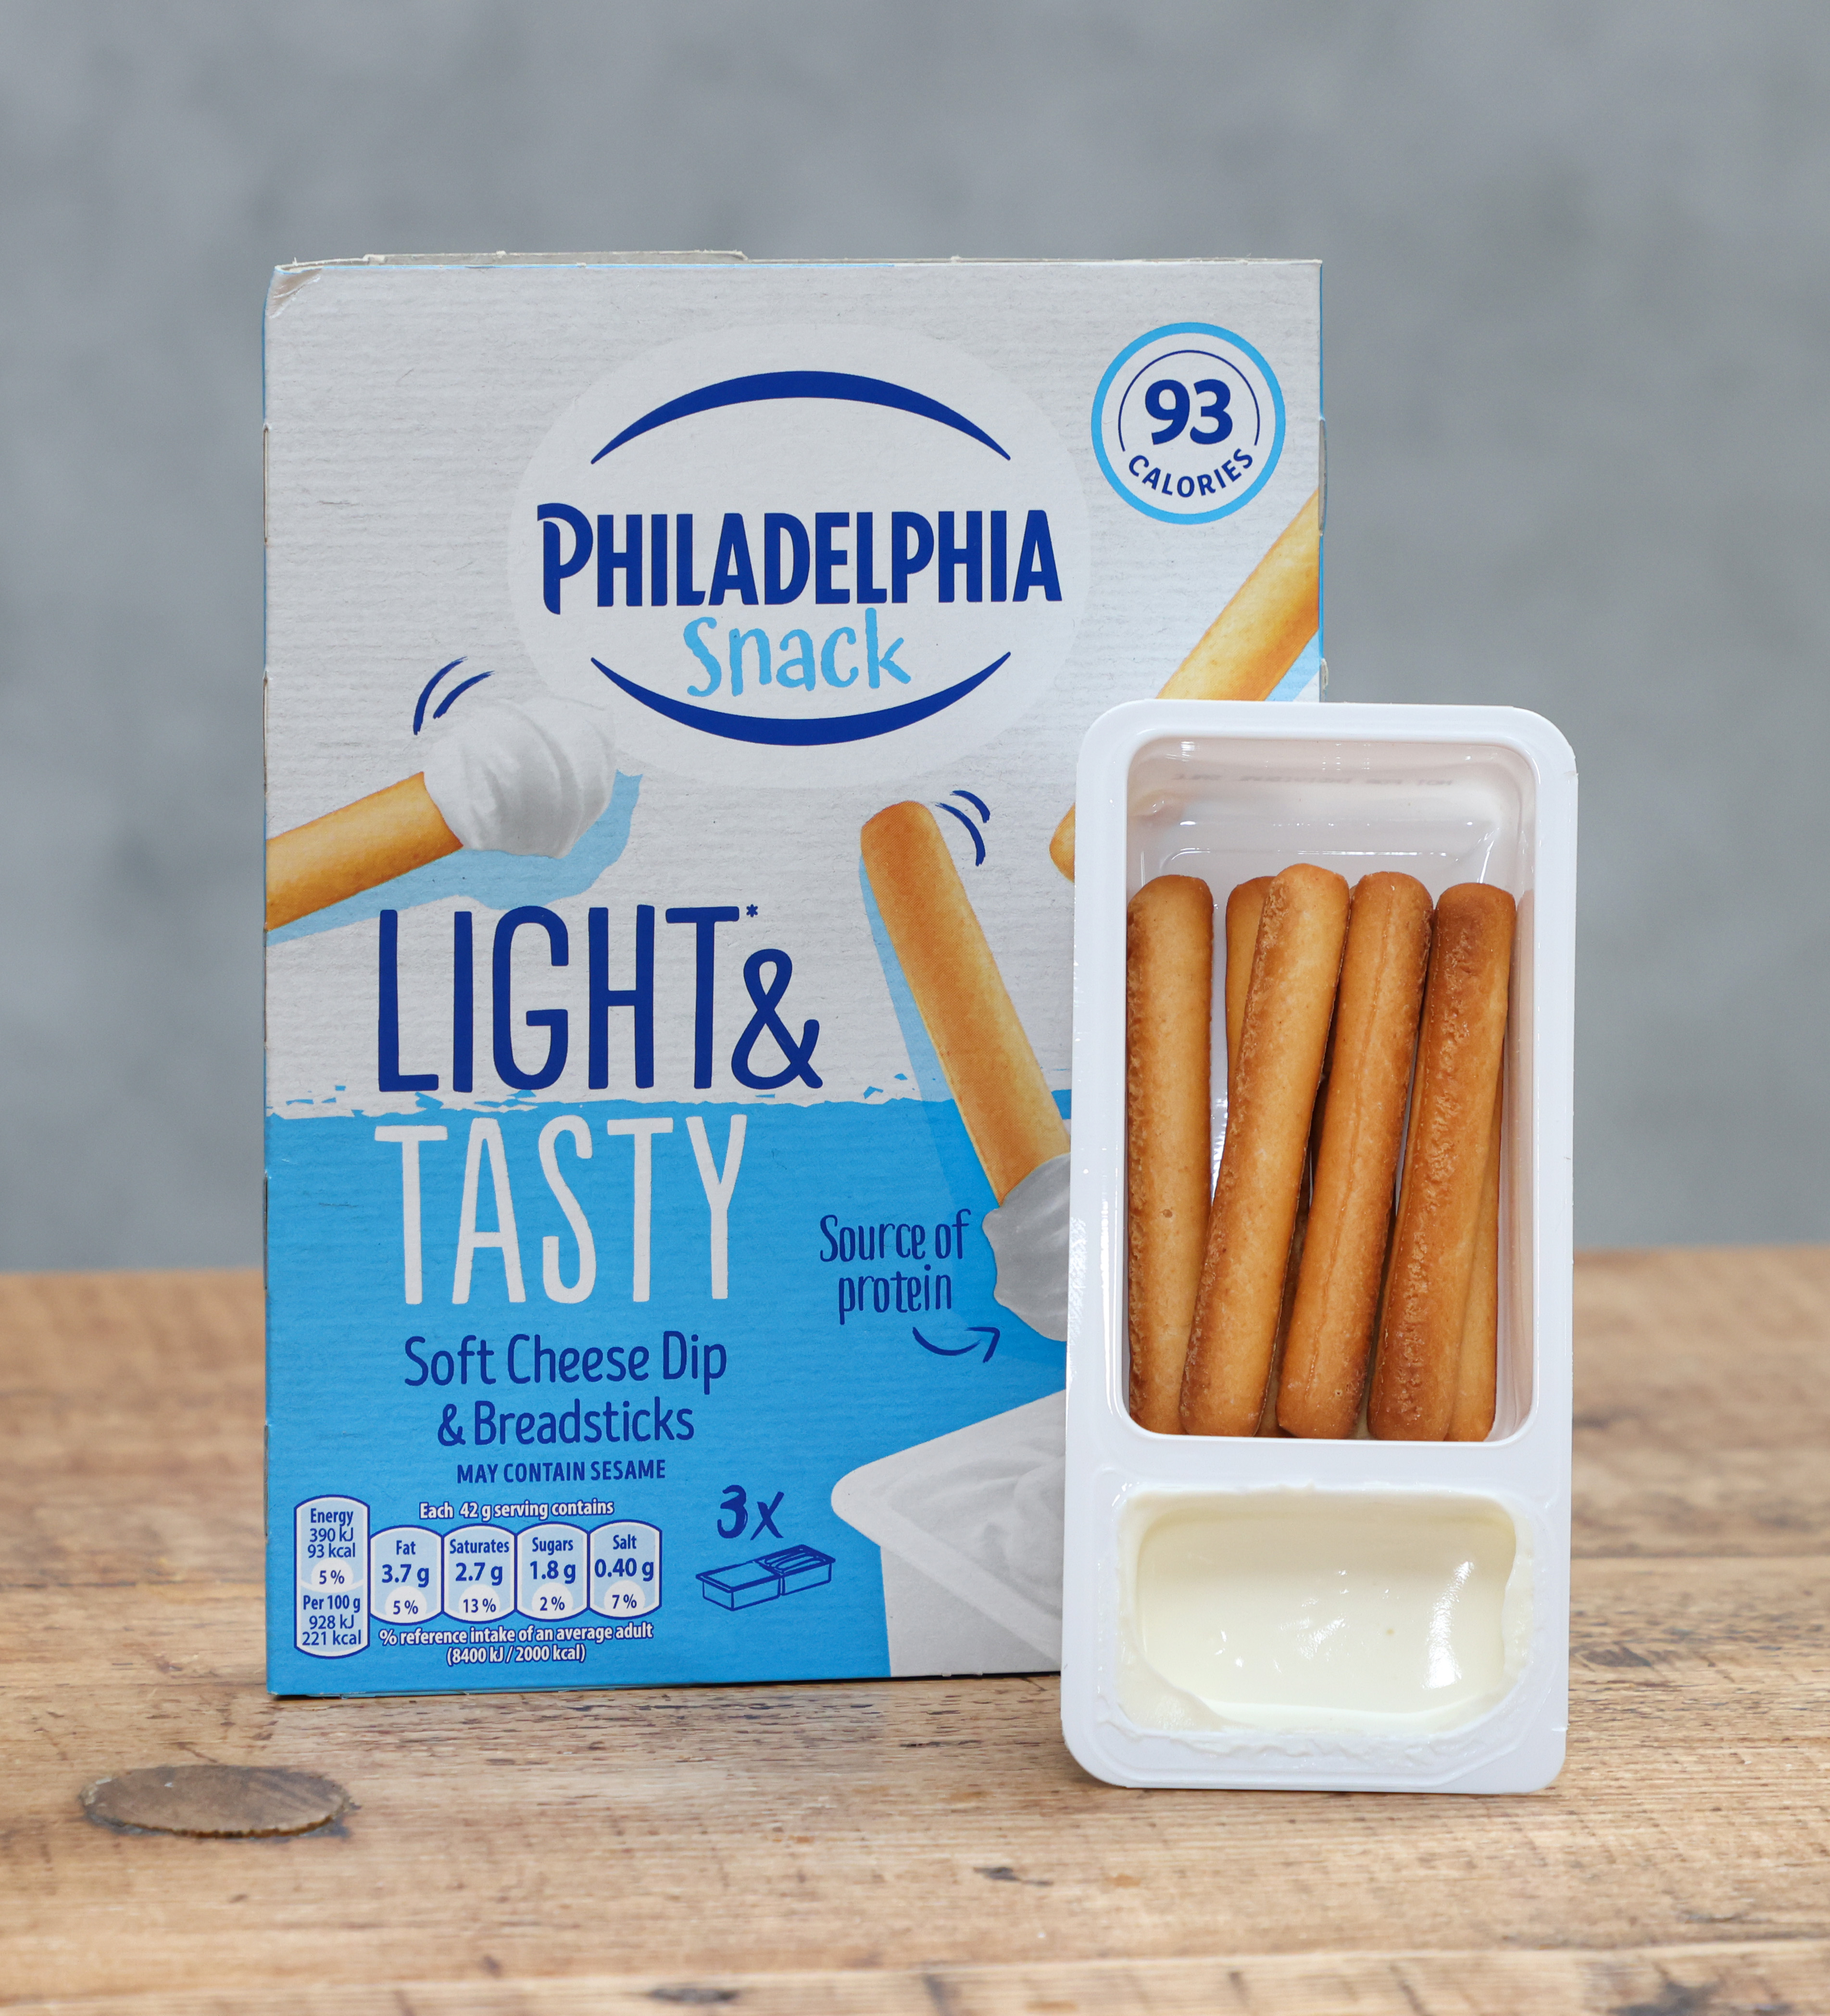 Philadelphias hatten den niedrigsten Zucker- und Salzgehalt, aber die Grissini waren winzig